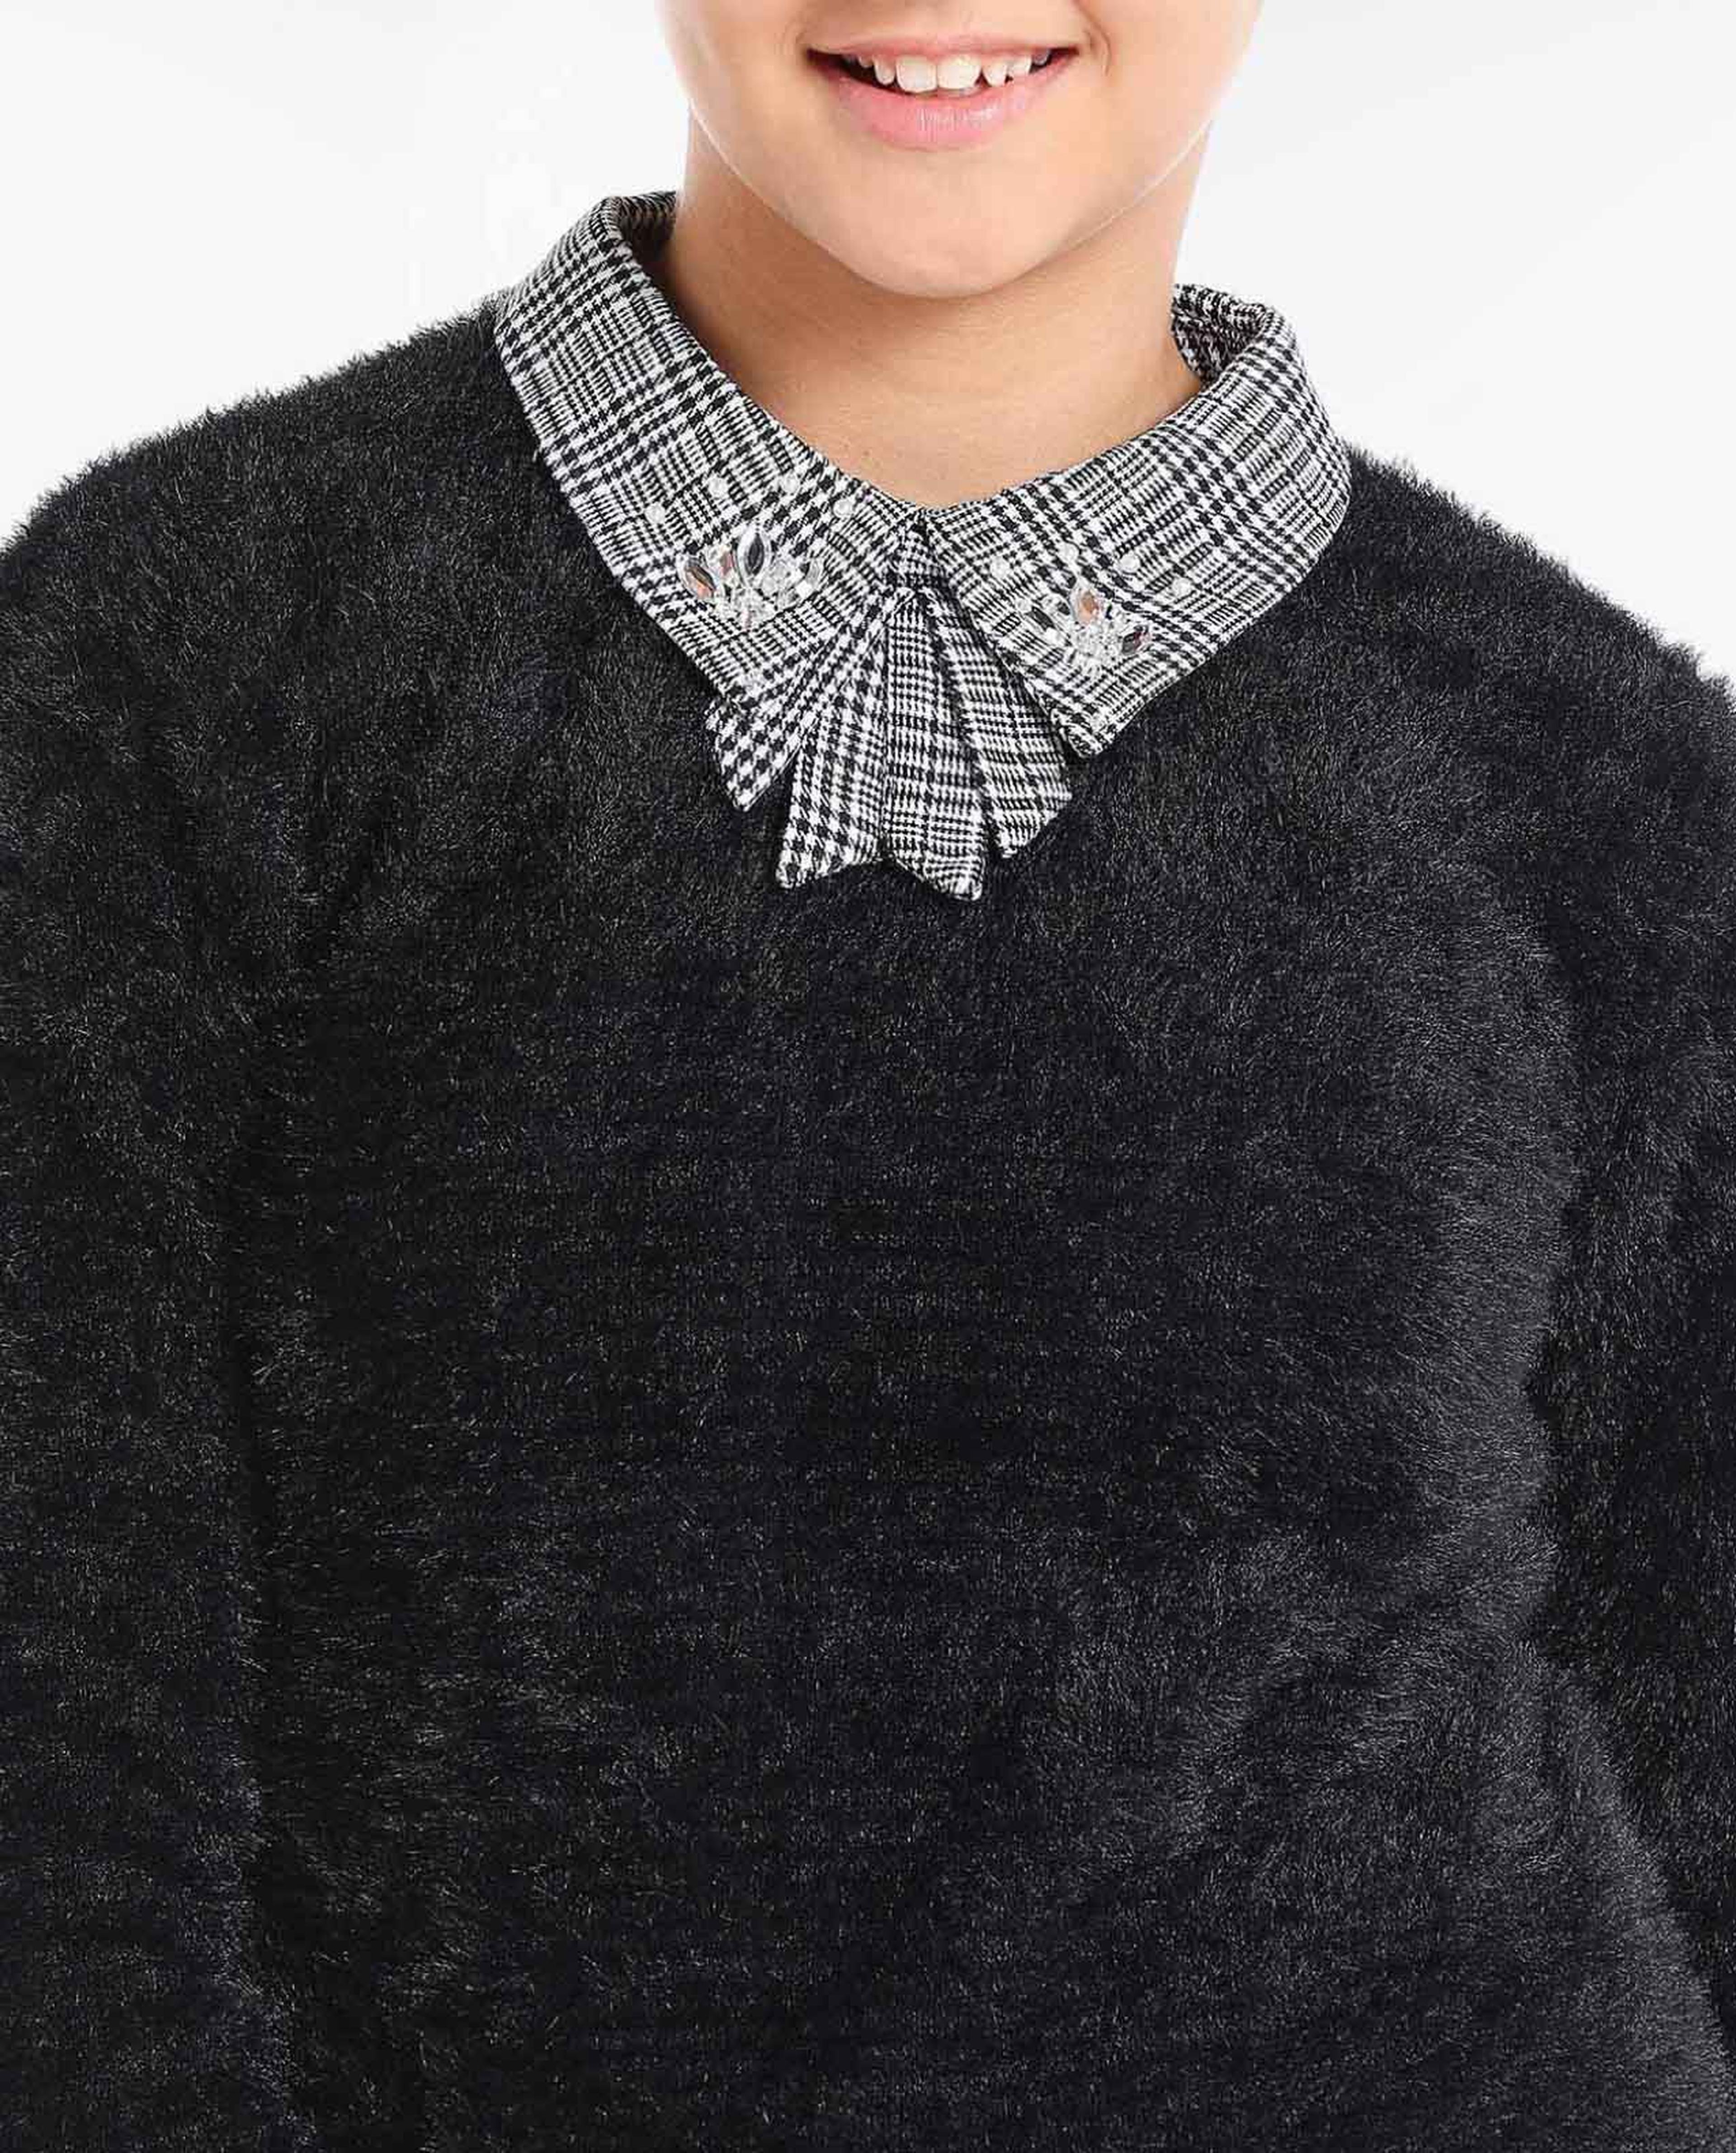 Embellished Collar Sweatshirt with Long Sleeves